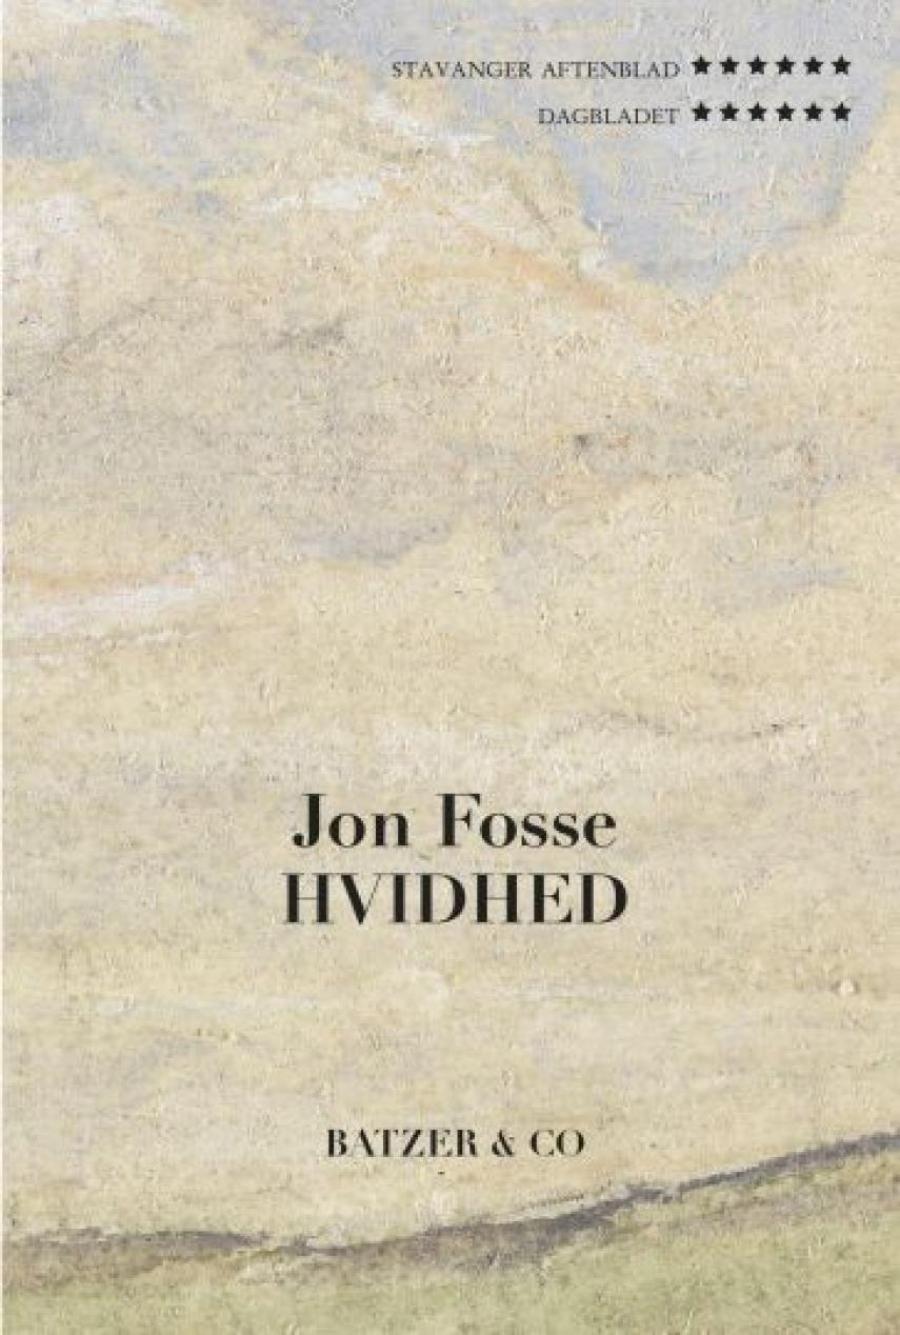 Bogforside: Hvidhed af Jon Fosse